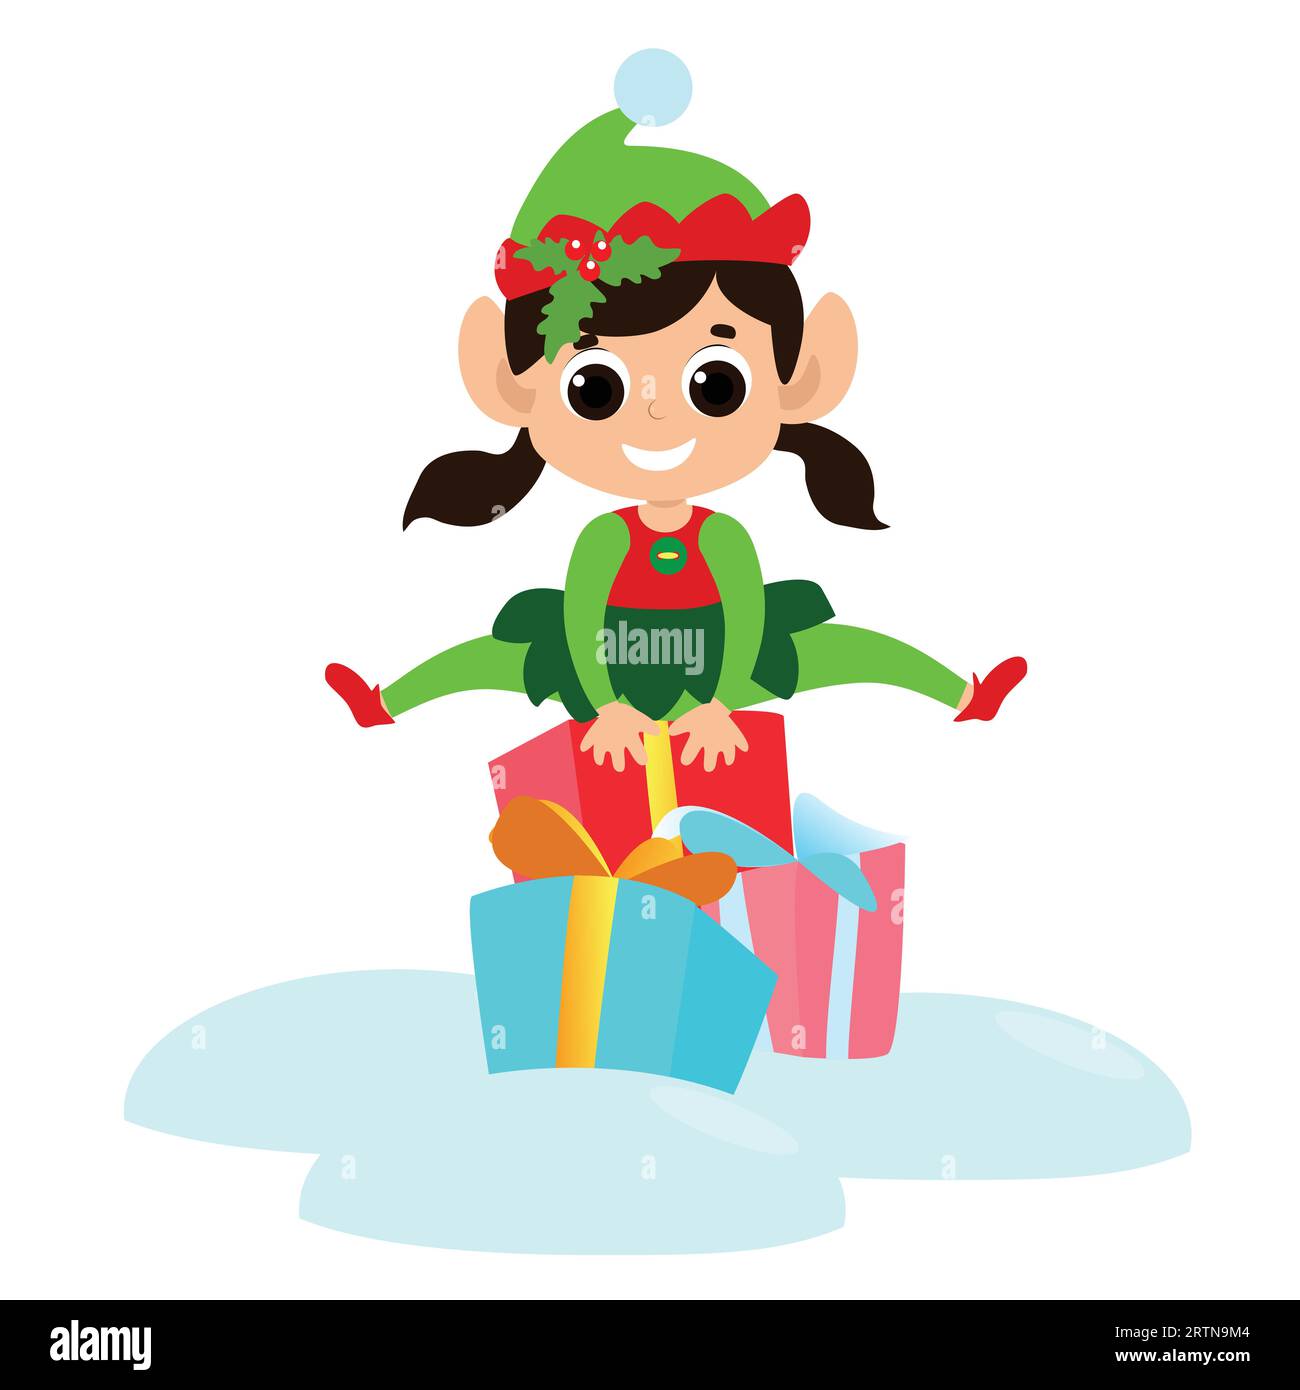 Das kleine Elfenmädchen springt über Geschenkboxen. Das Kind ist glücklich und trägt ein traditionelles Elfenkostüm. Sie hat ein süßes Gesicht und glückliche Augen. Stock Vektor